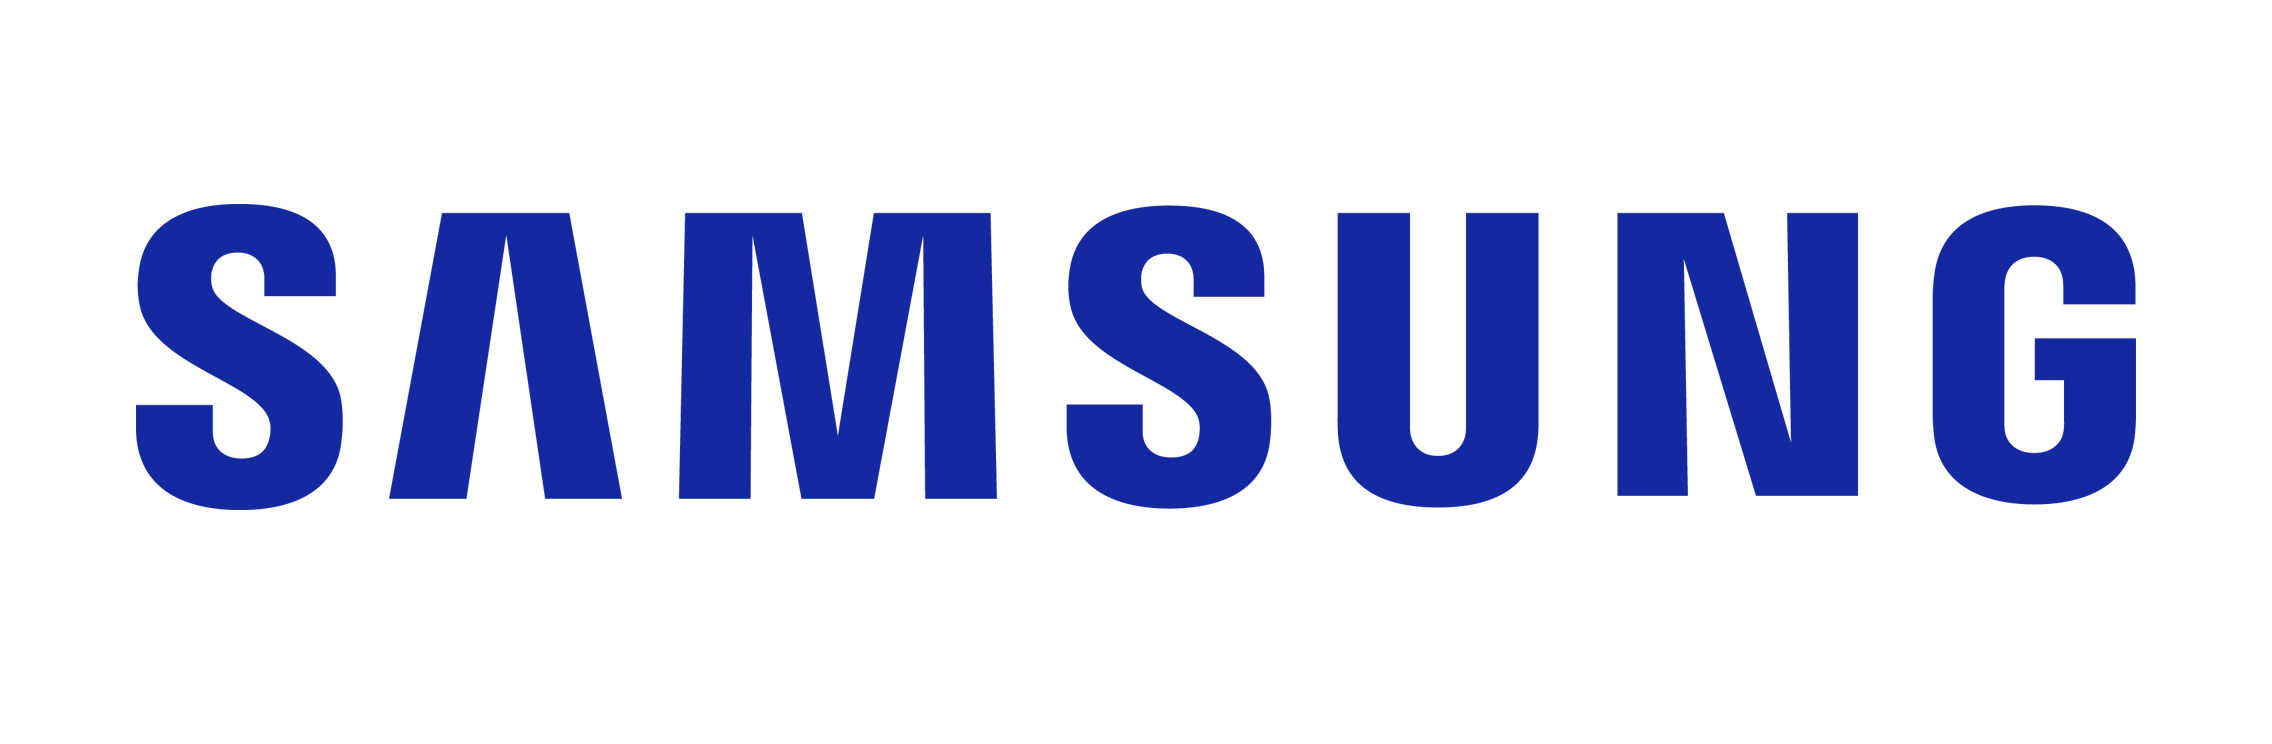 Khoá cửa điện tử Samsung